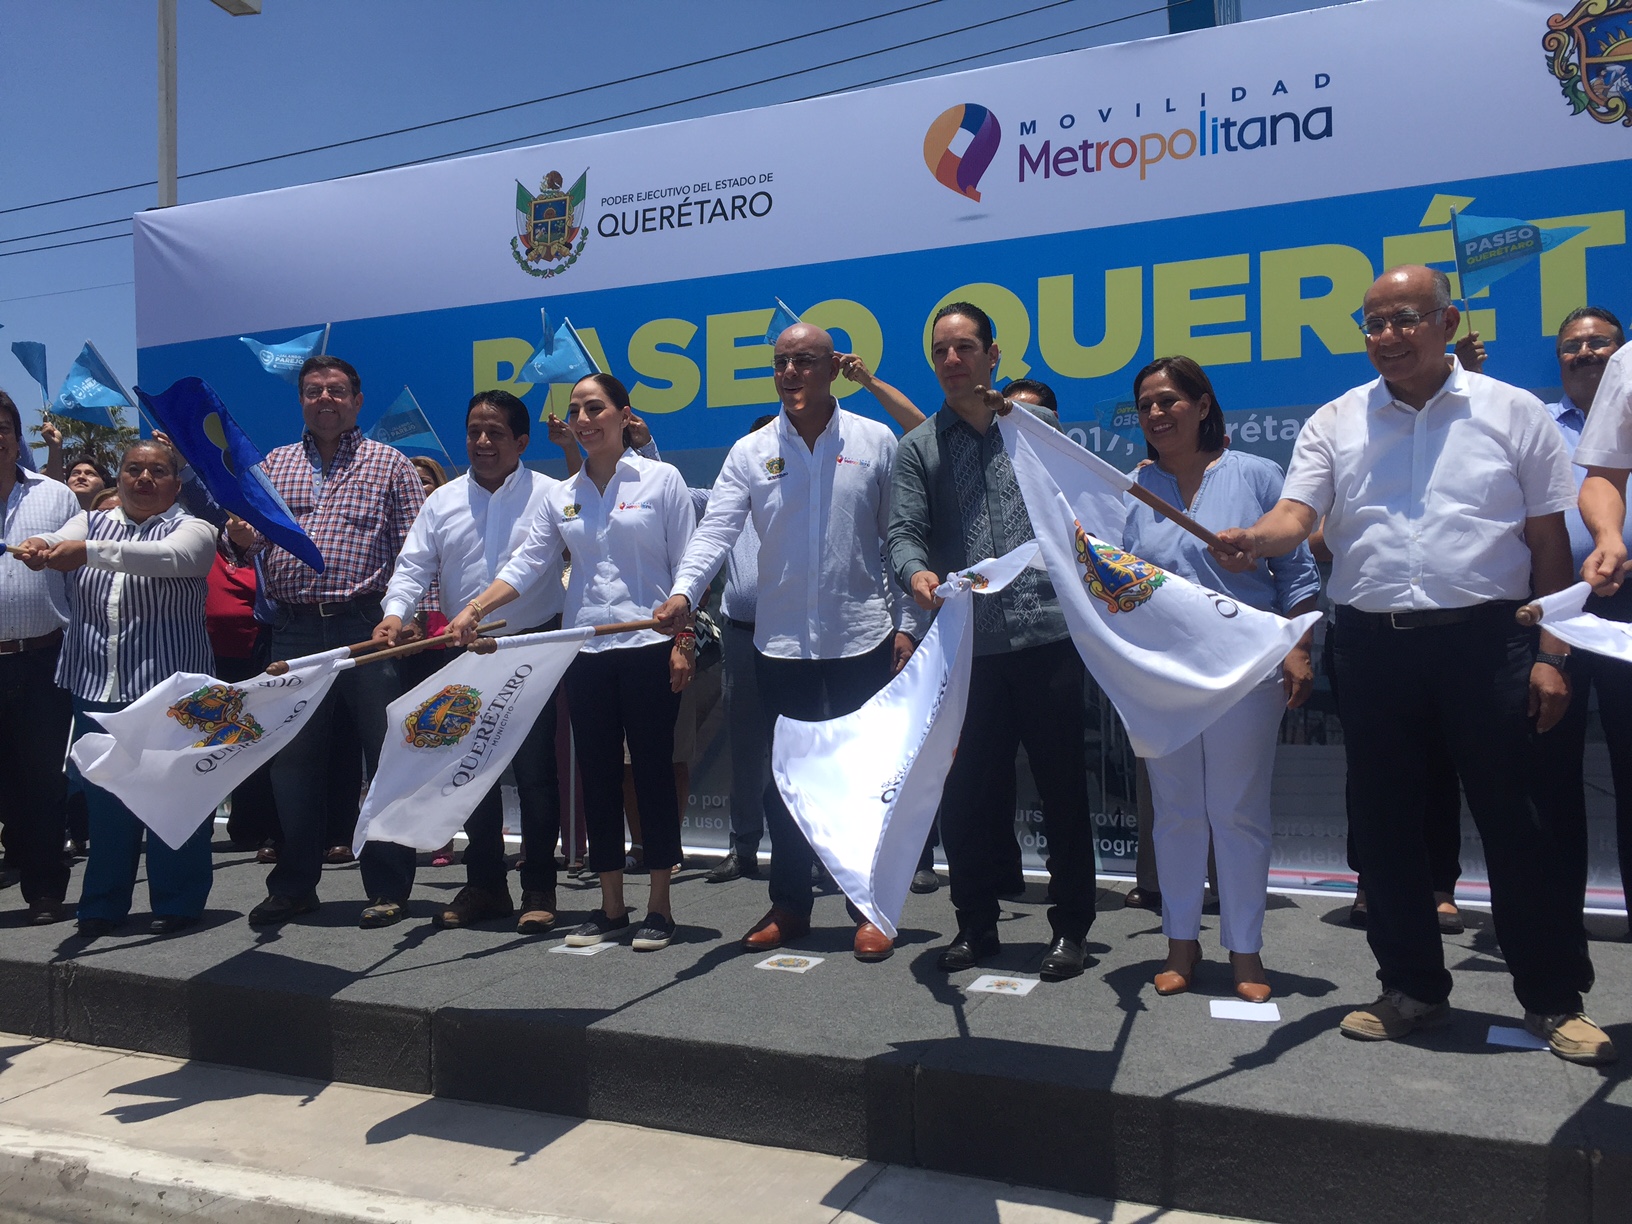  Inauguran Paseo Querétaro con una inversión de 234.9 millones de pesos